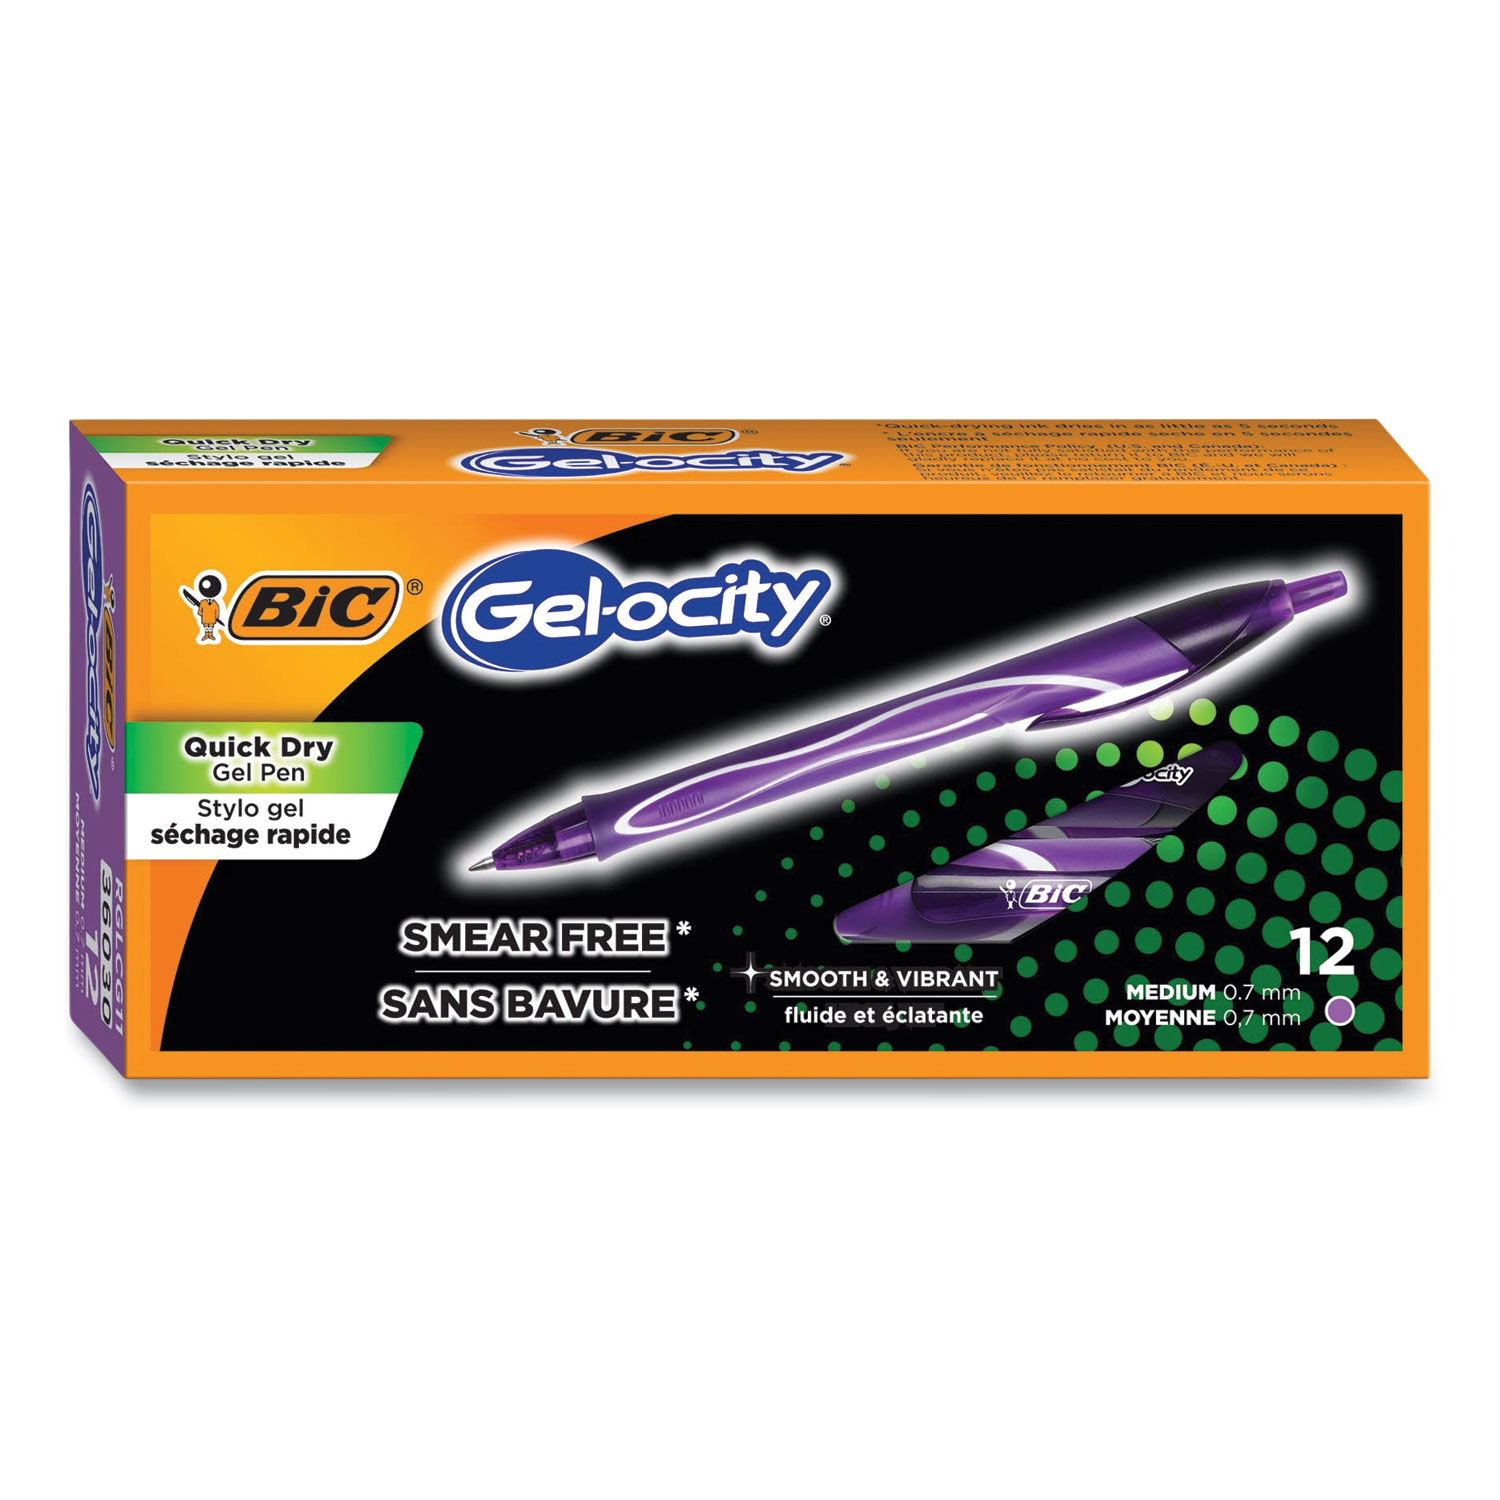 BIC® Gel-ocity Quick Dry Retractable Gel Pen, Medium 0.7 mm, Purple Ink/Barrel, Dozen